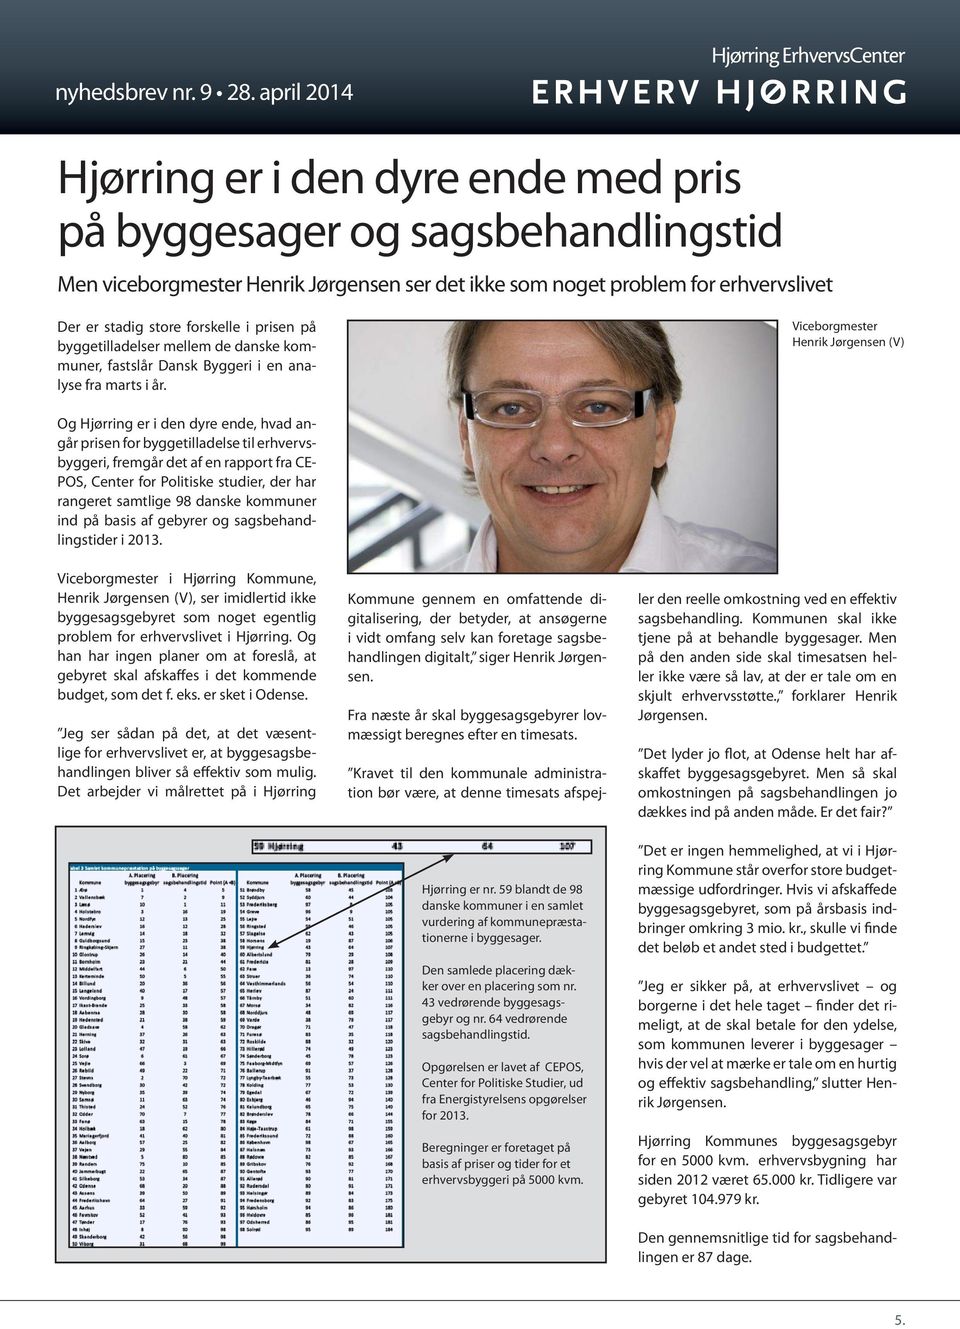 Viceborgmester Henrik Jørgensen (V) Og Hjørring er i den dyre ende, hvad angår prisen for byggetilladelse til erhvervsbyggeri, fremgår det af en rapport fra CE- POS, Center for Politiske studier, der